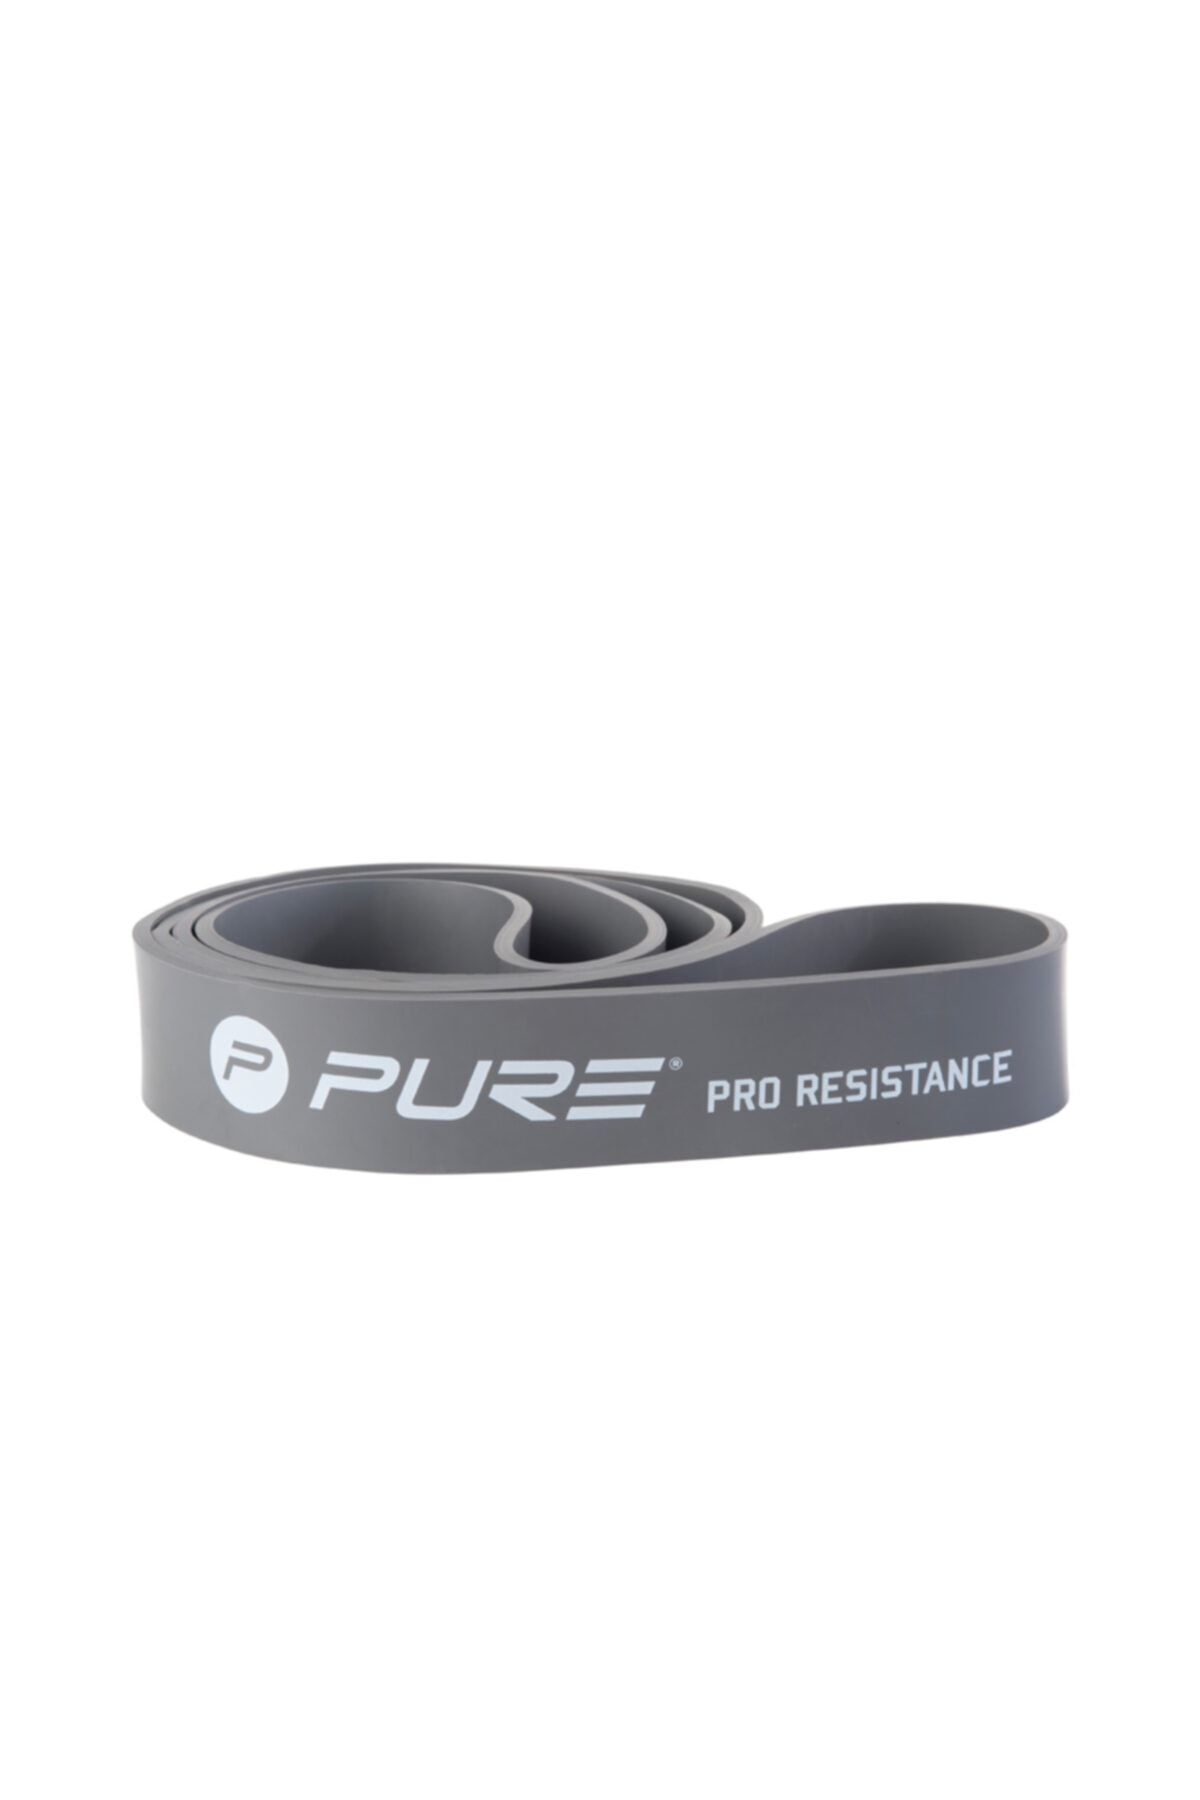 Pure Unisex Sporcu Aksesuarları - Pure Çok Yüksek Sert Direnç Lastiği Pro - P2I200120